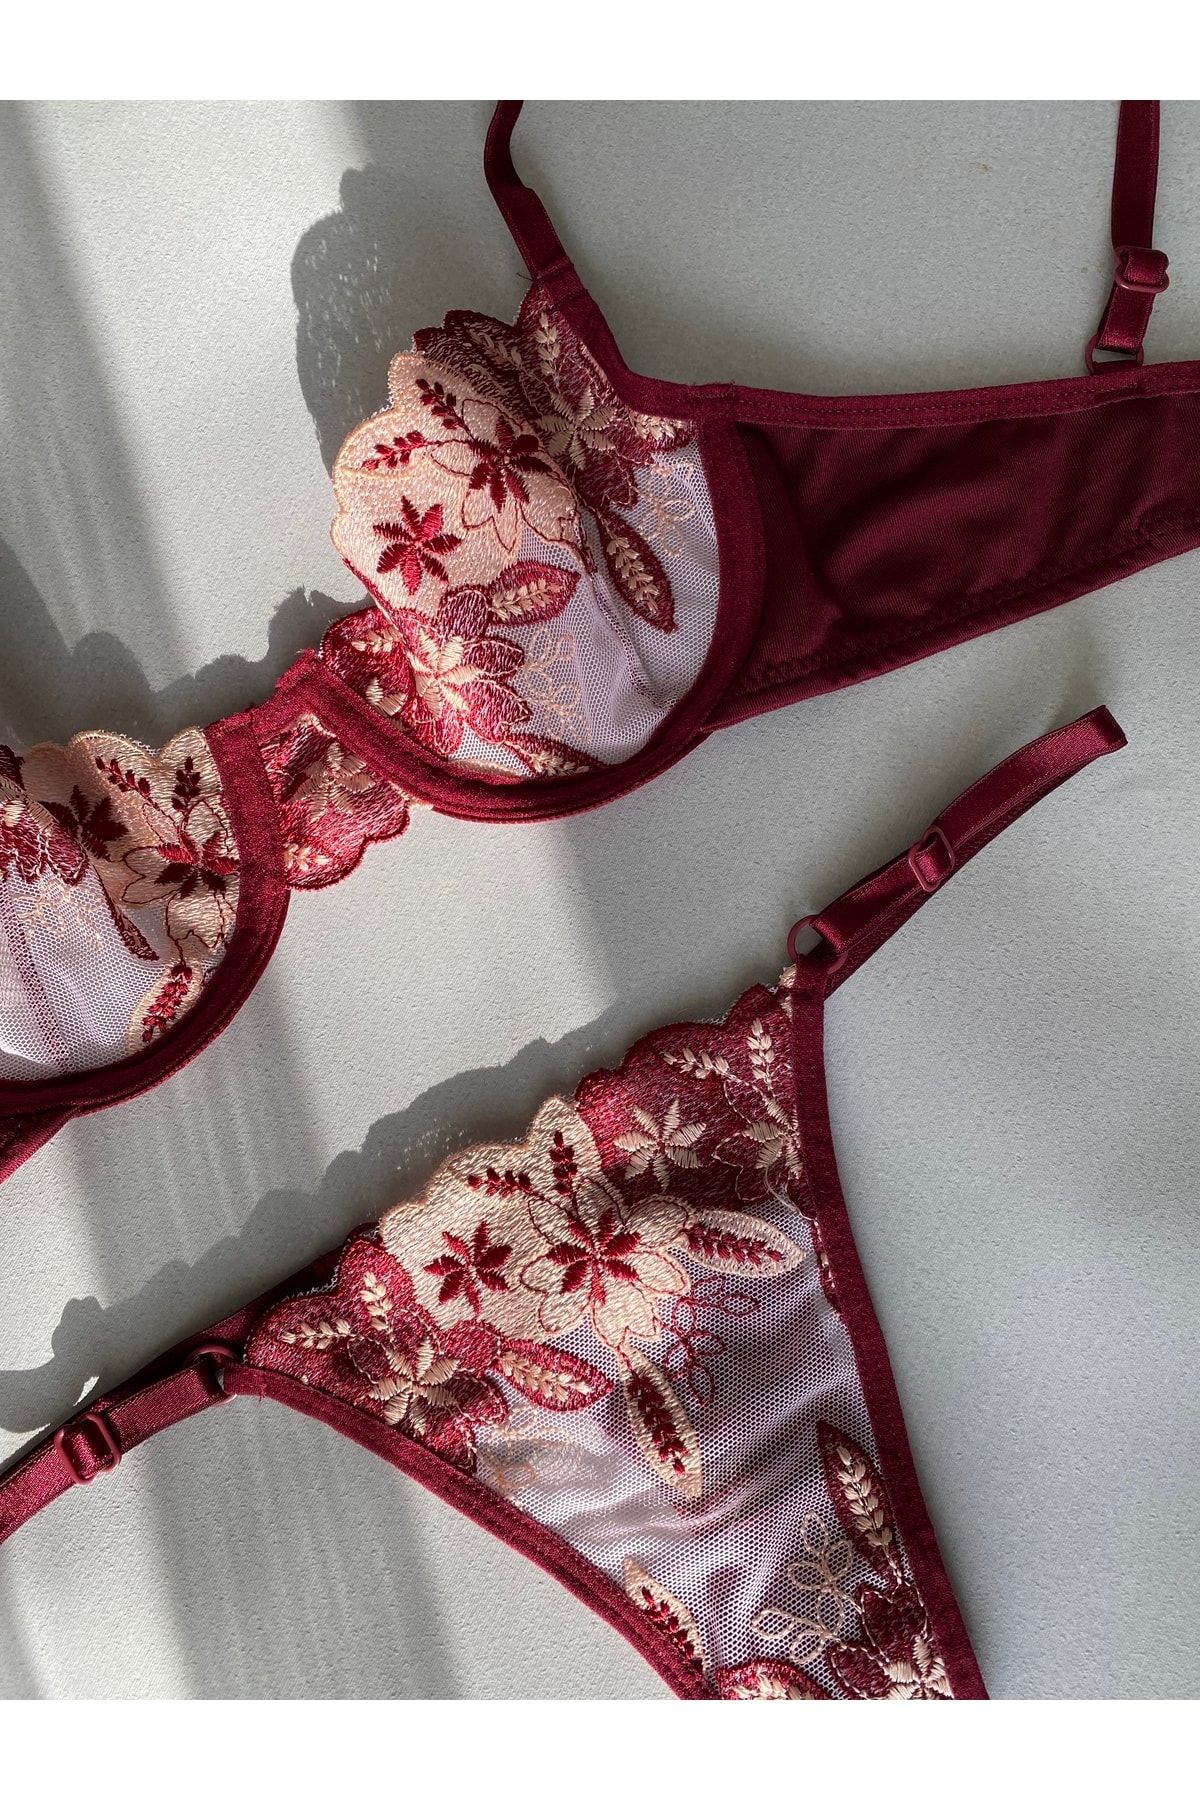 LucyGirls Kadın Fantezi Dantel Saten Detaylı Sütyen Külot String Tasarım Iç  Çamaşır Takımı Iç Giyim